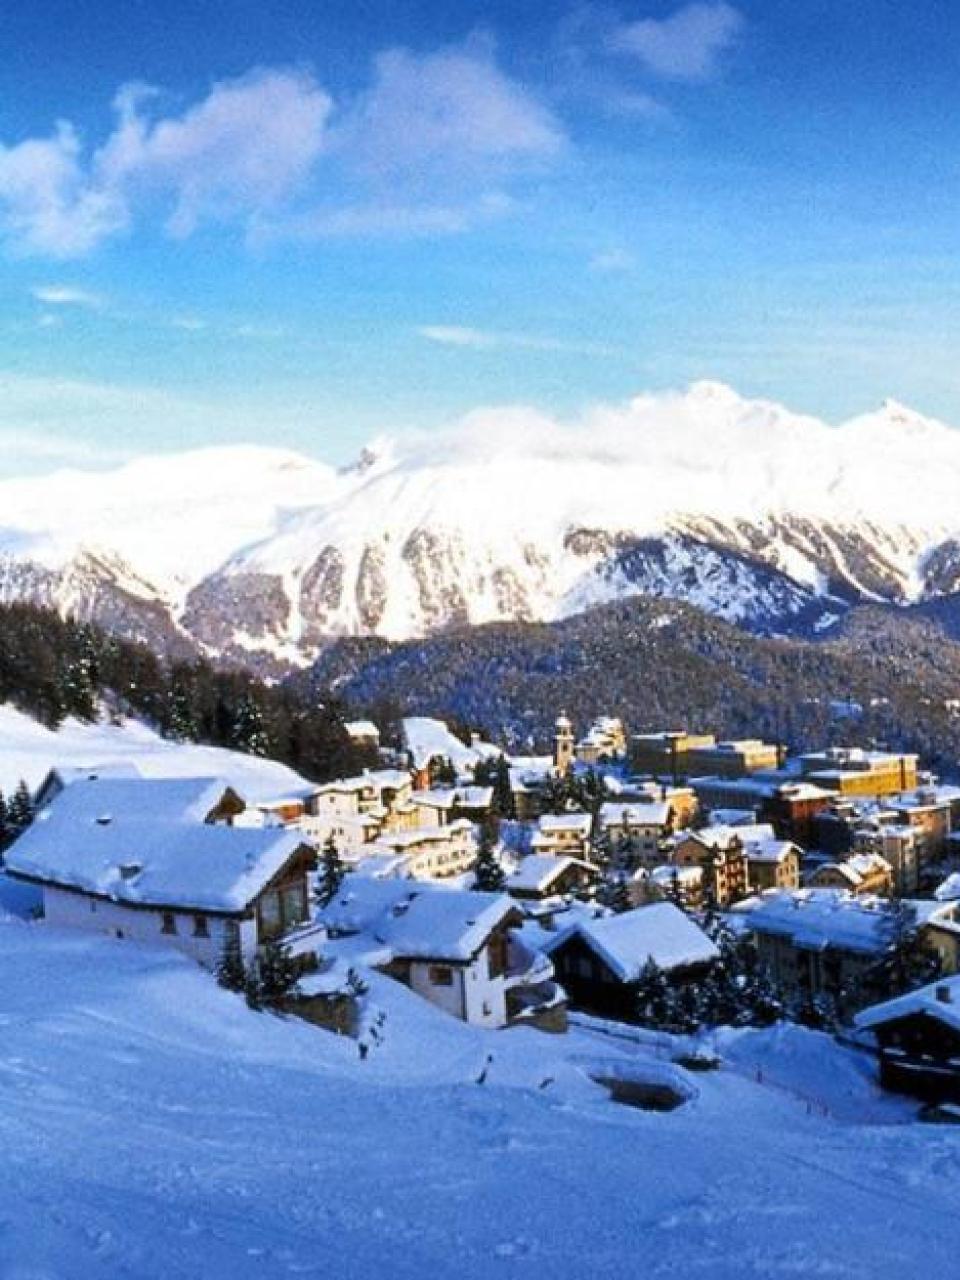 Switzerland: cradle of the Winter Olympics